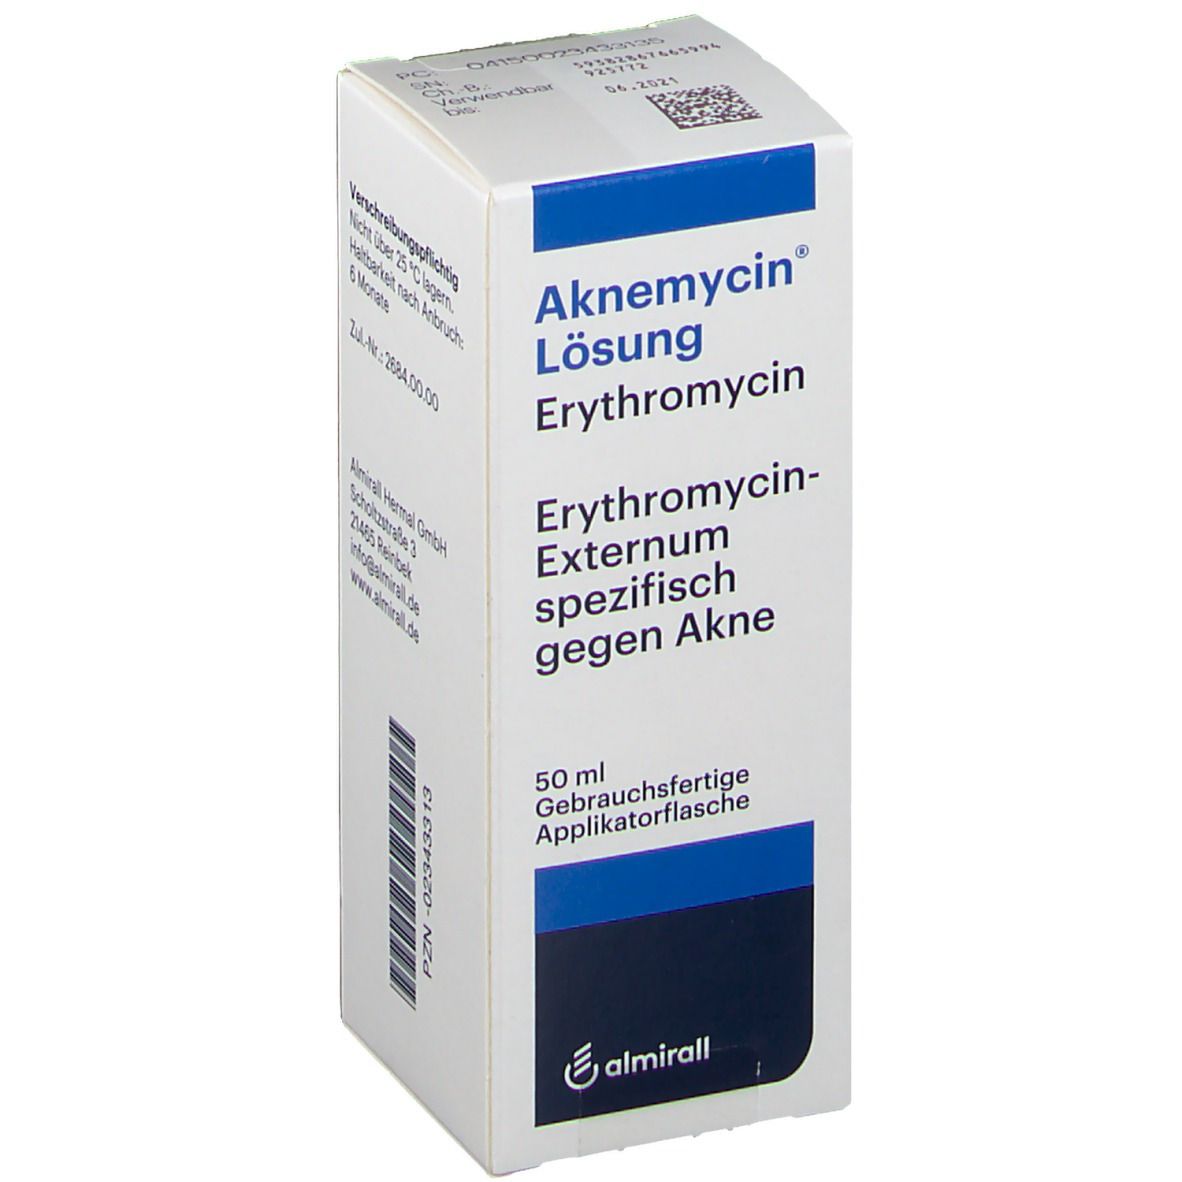 Aknemycin®